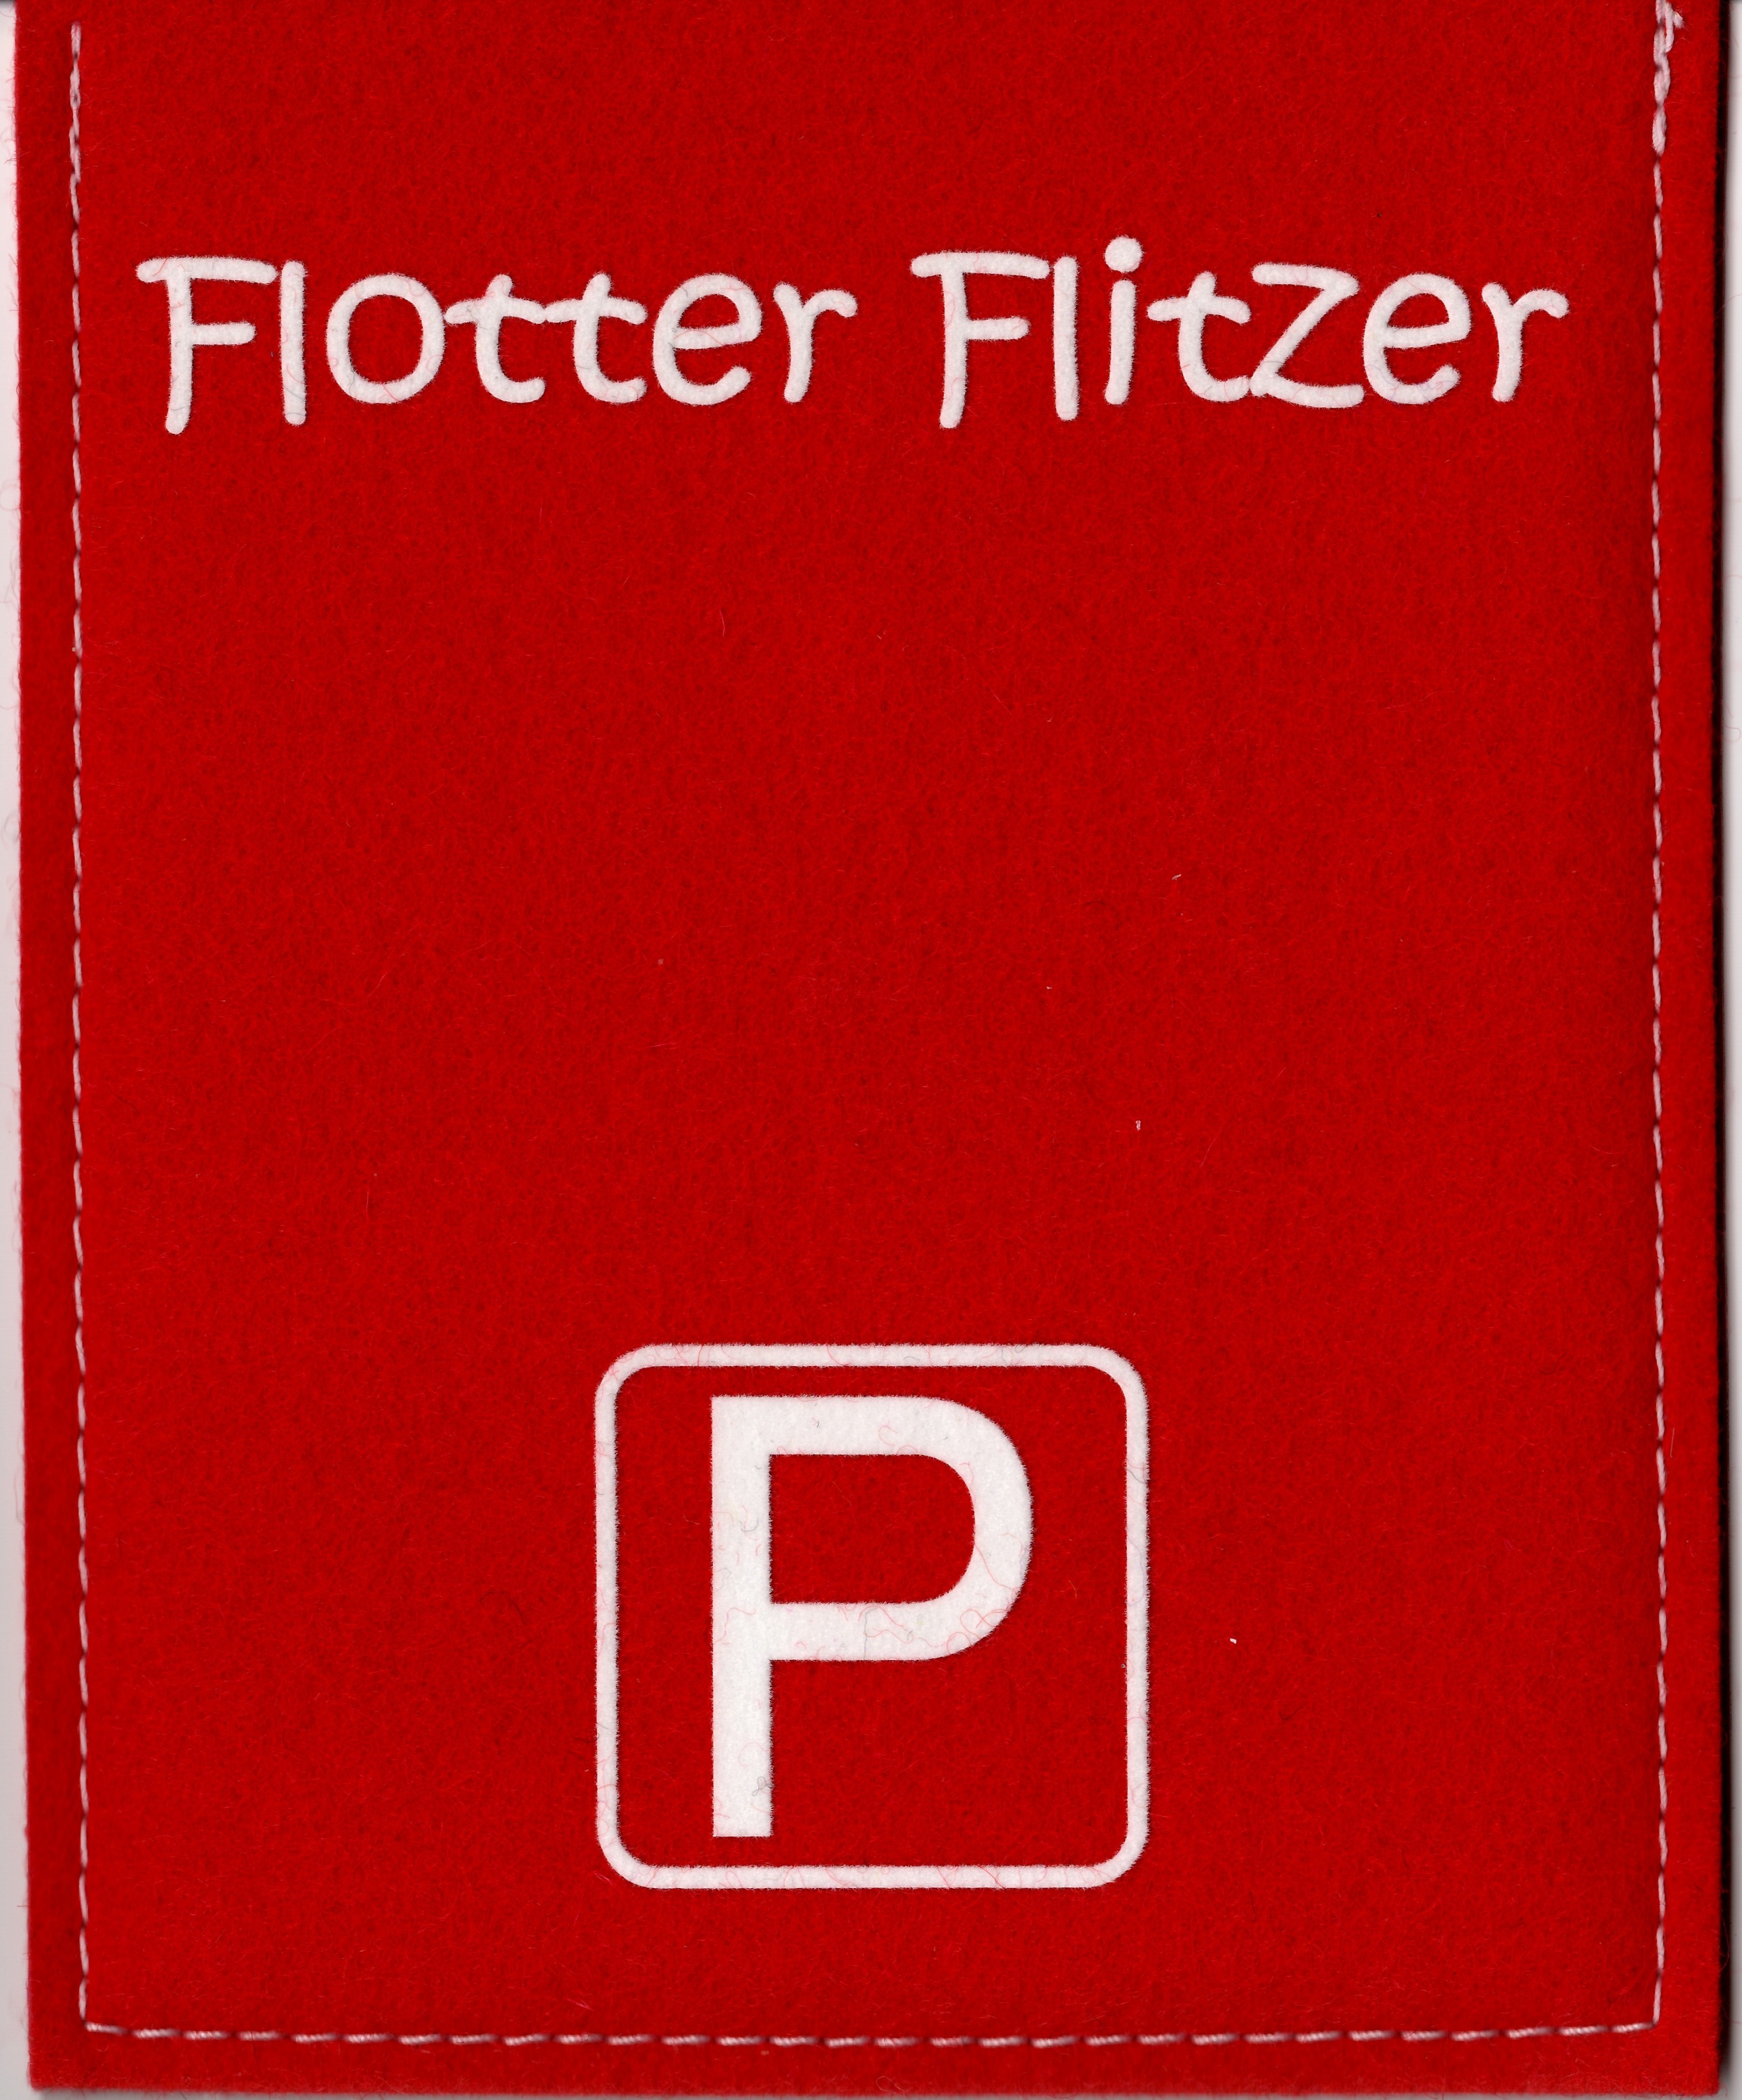 https://emma-anna.com/2675/parkscheibe-parkkarte-blaue-zone-flotter-flitzer-rot-weiss-parkscheibe-fur-die-blaue-zone-erhaltlich-mit-viele-tollen-spruchen-e.jpg